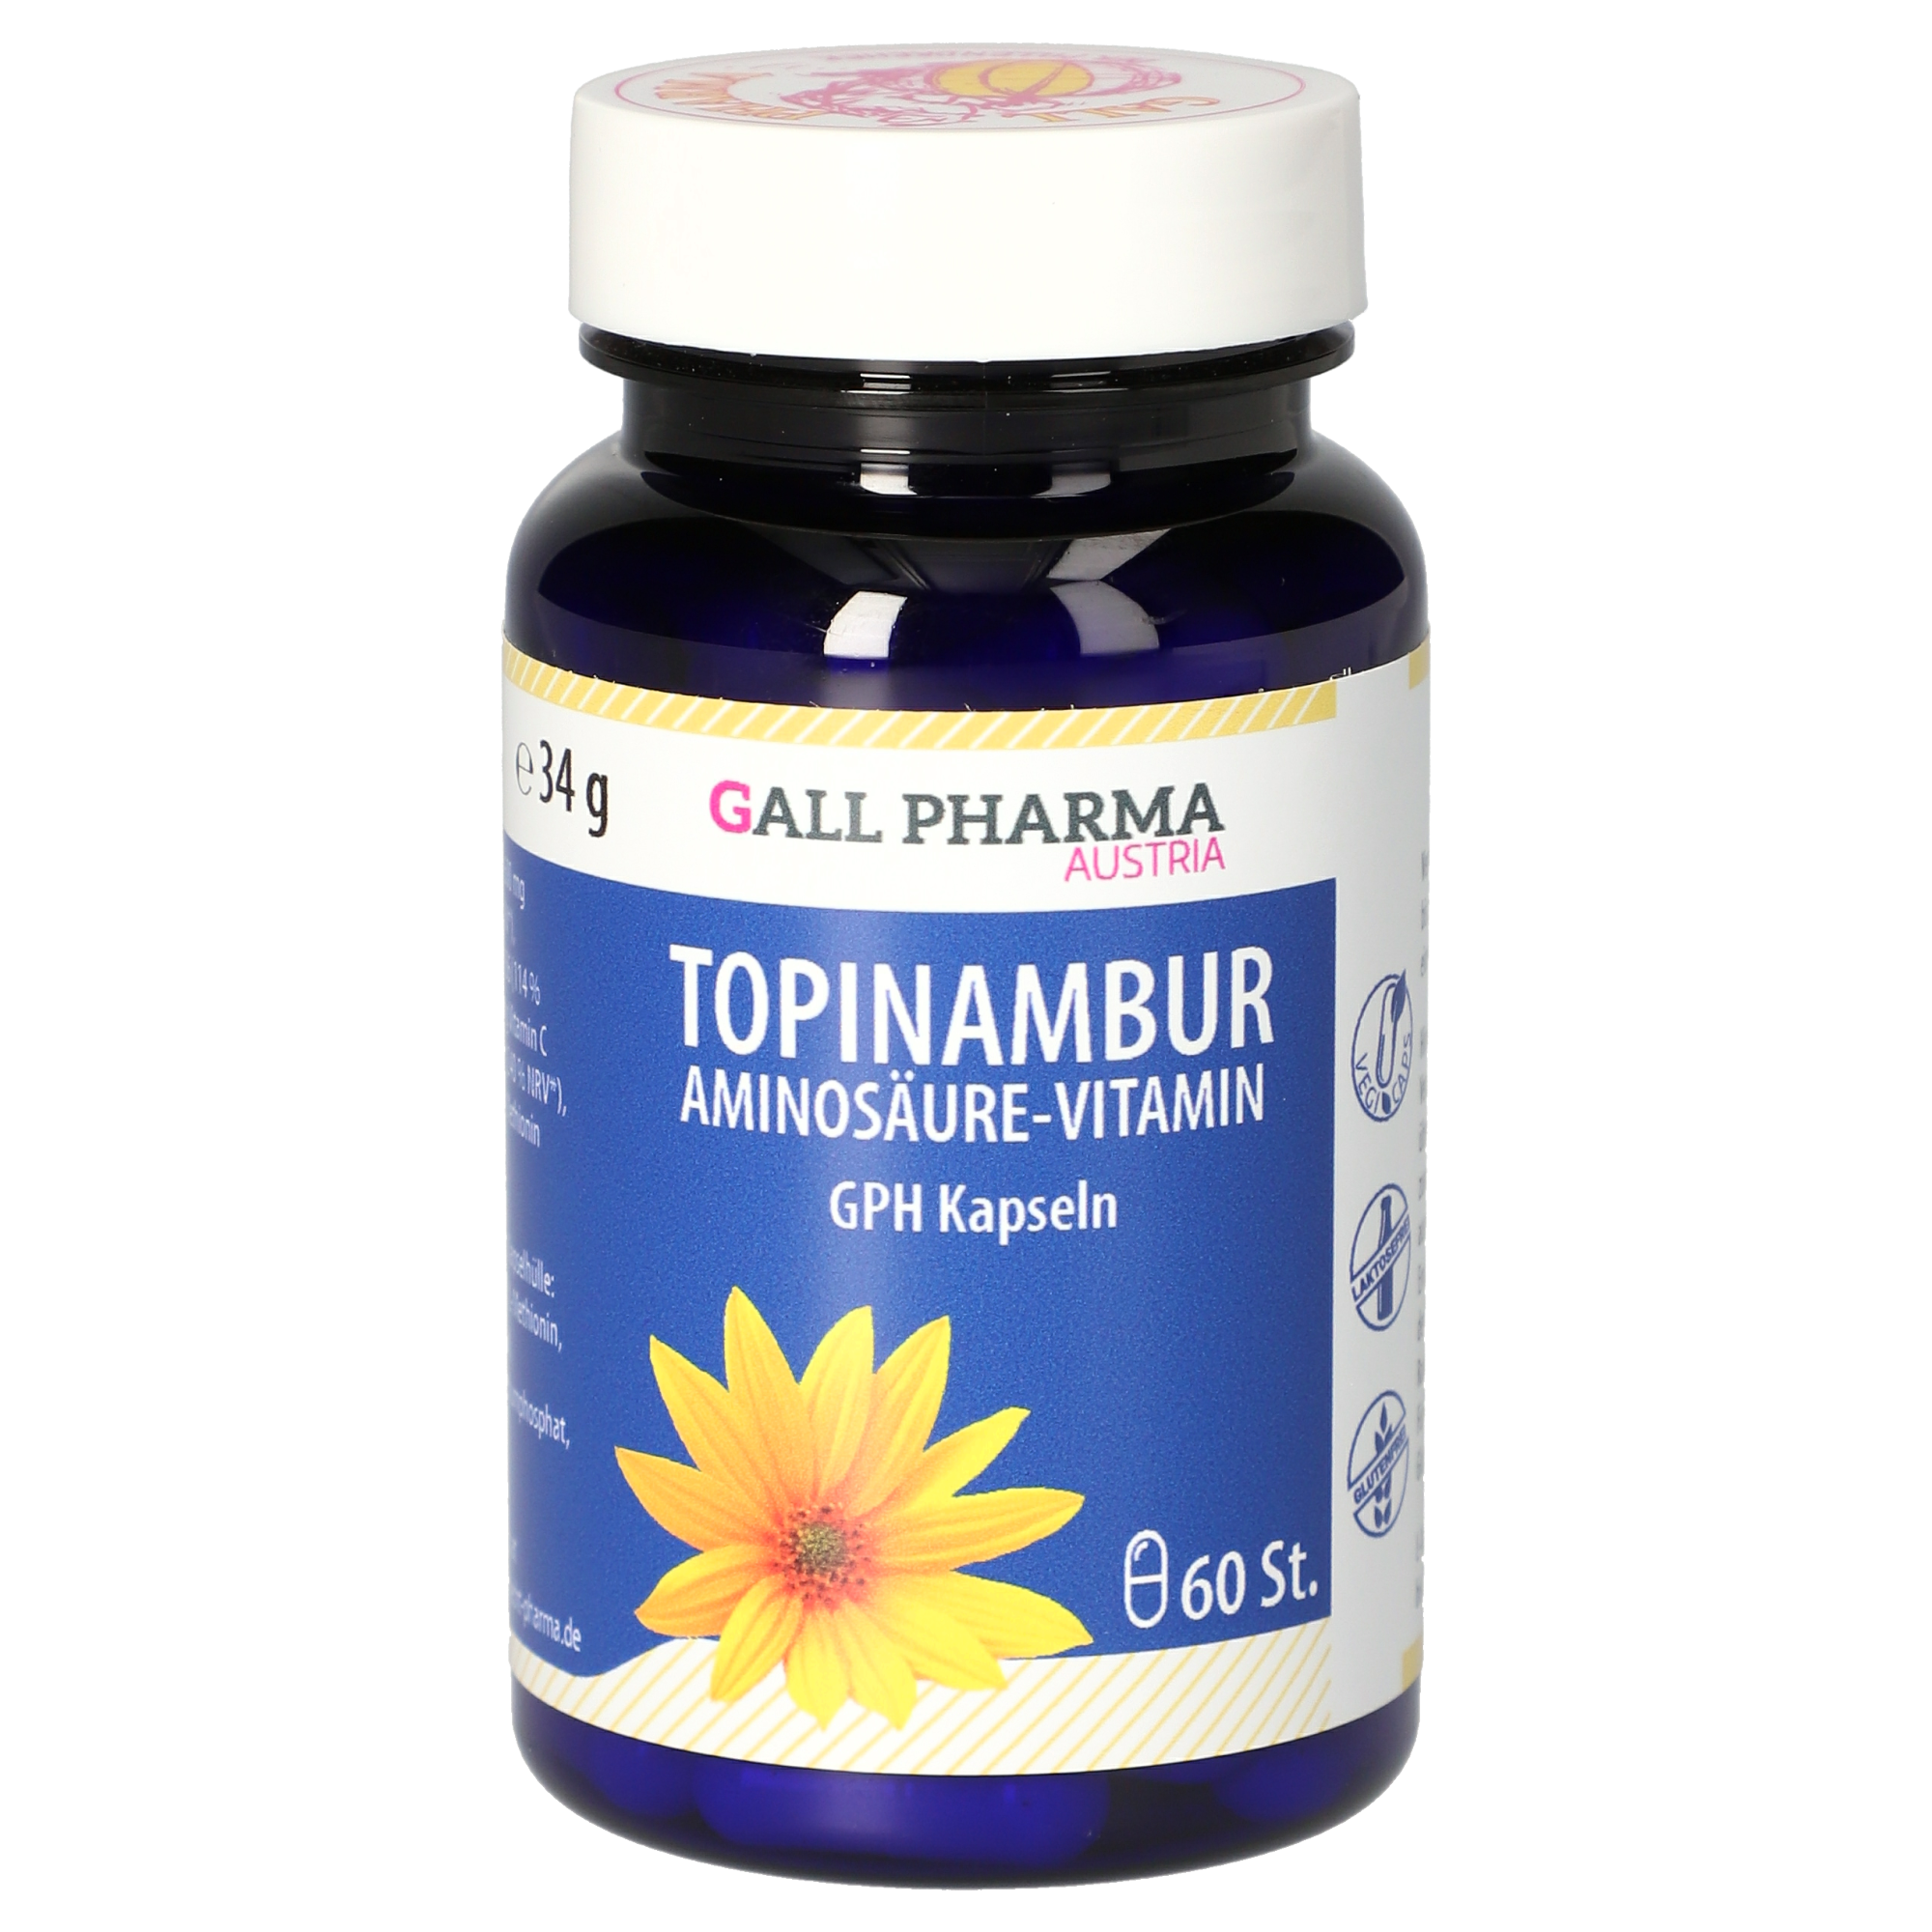 Topinambur-Aminosäure-Vitamin GPH Kapseln